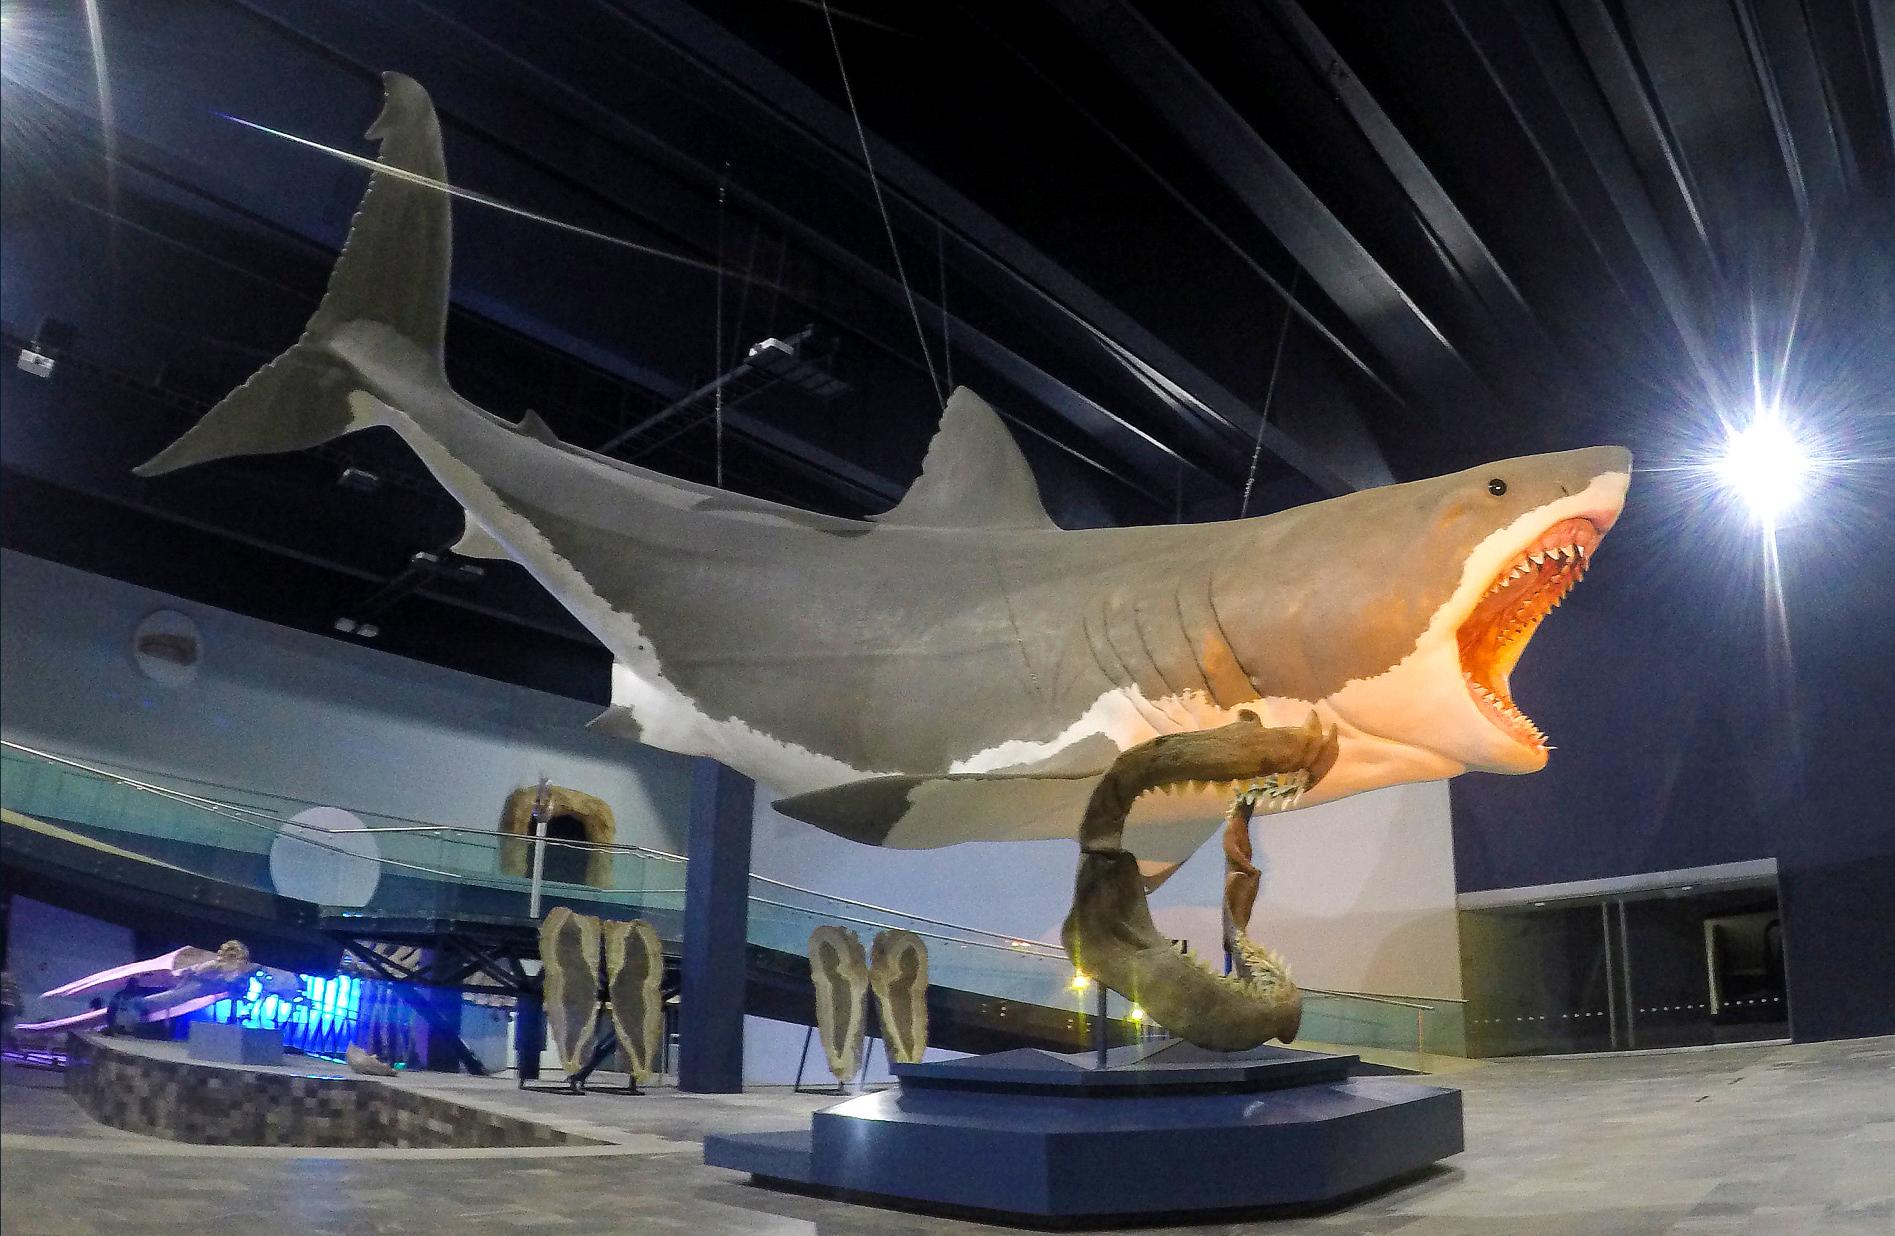 Rappresentazione artistica di uno squalo Megalodon lungo 16 metri al Museo dell'Evoluzione, Puebla, Messico.